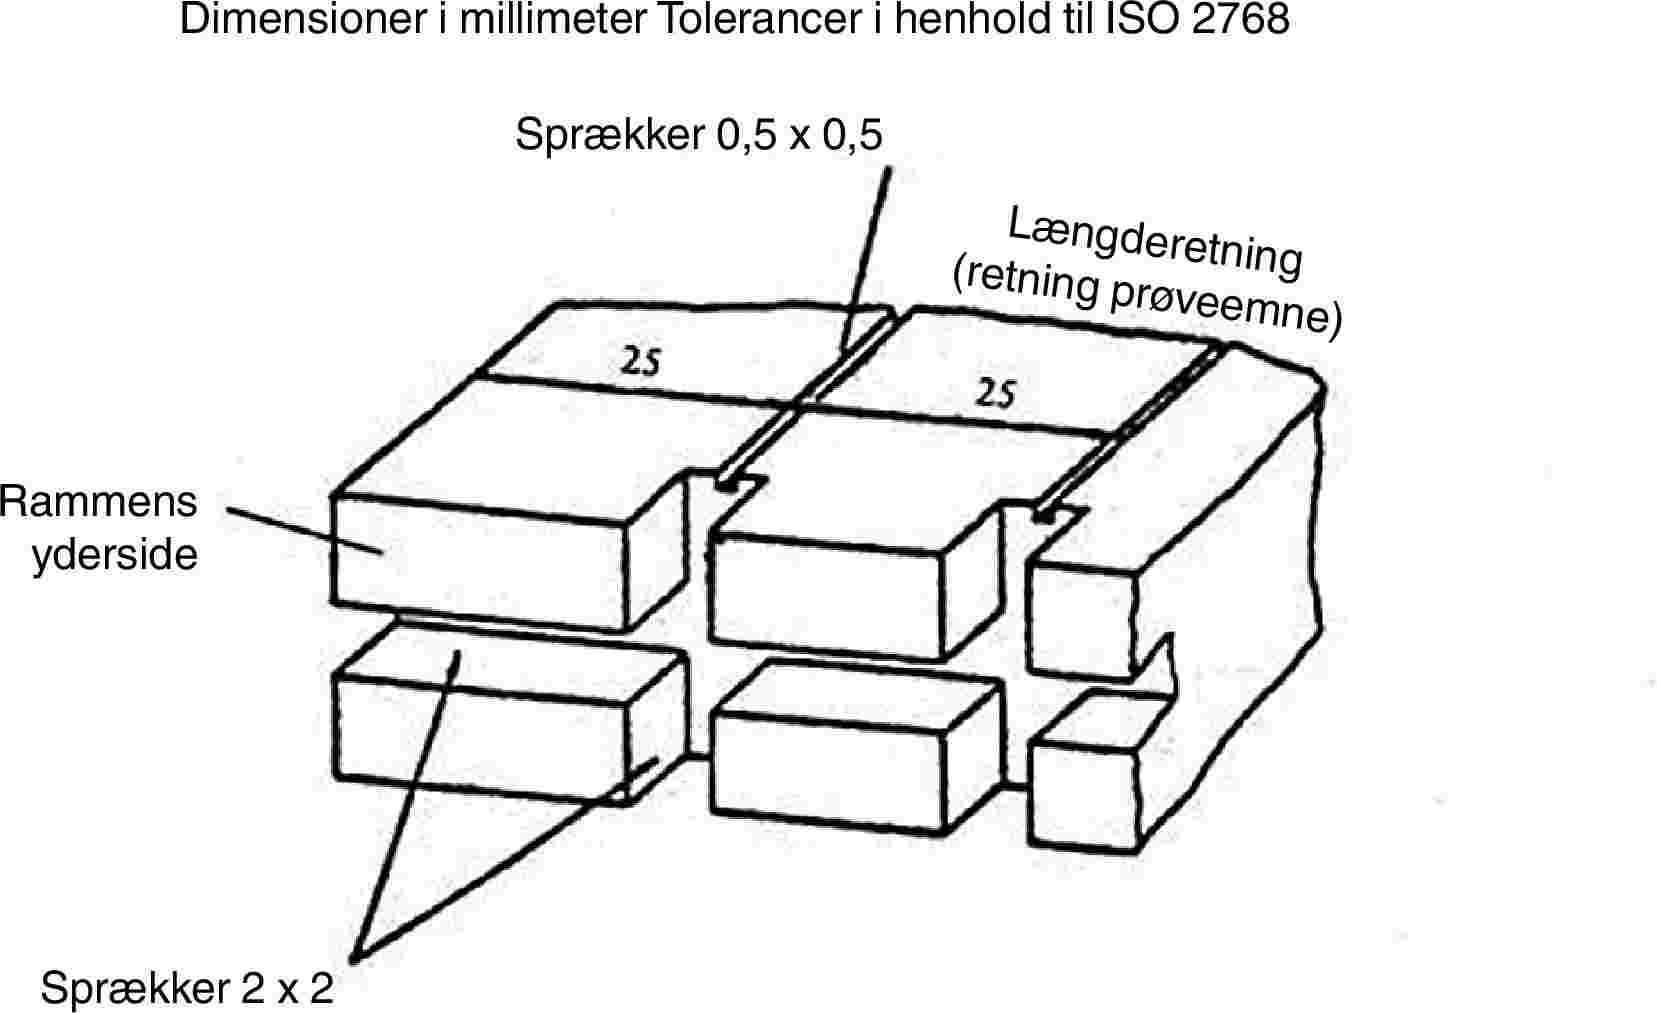 Dimensioner i millimeter Tolerancer i henhold til ISO 2768Sprækker 0,5 x 0,5Længderetning (retning prøveemne)Rammens ydersideSprækker 2 x 2